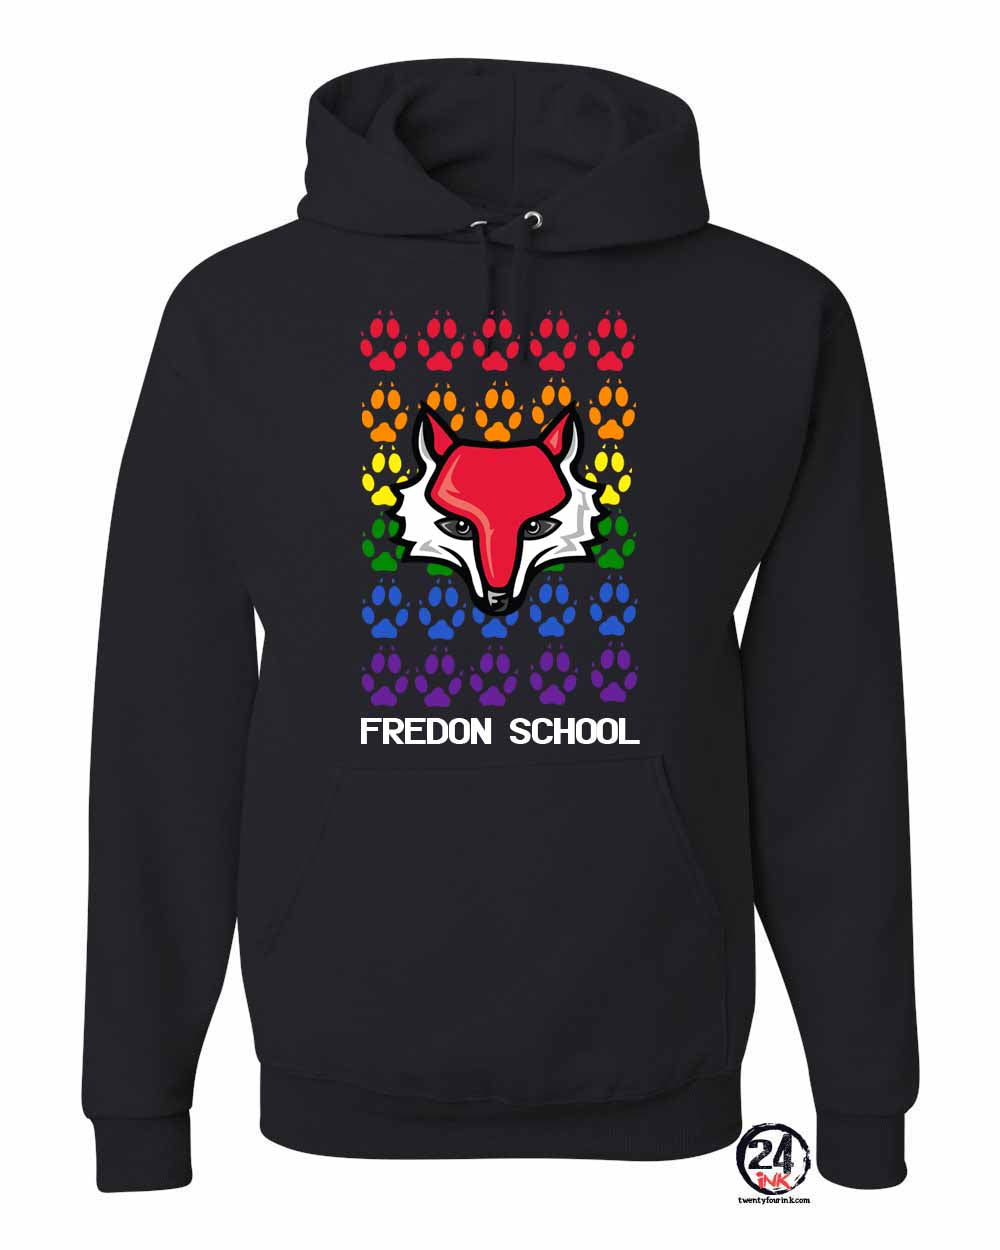 Fredon Design 3 Hooded Sweatshirt